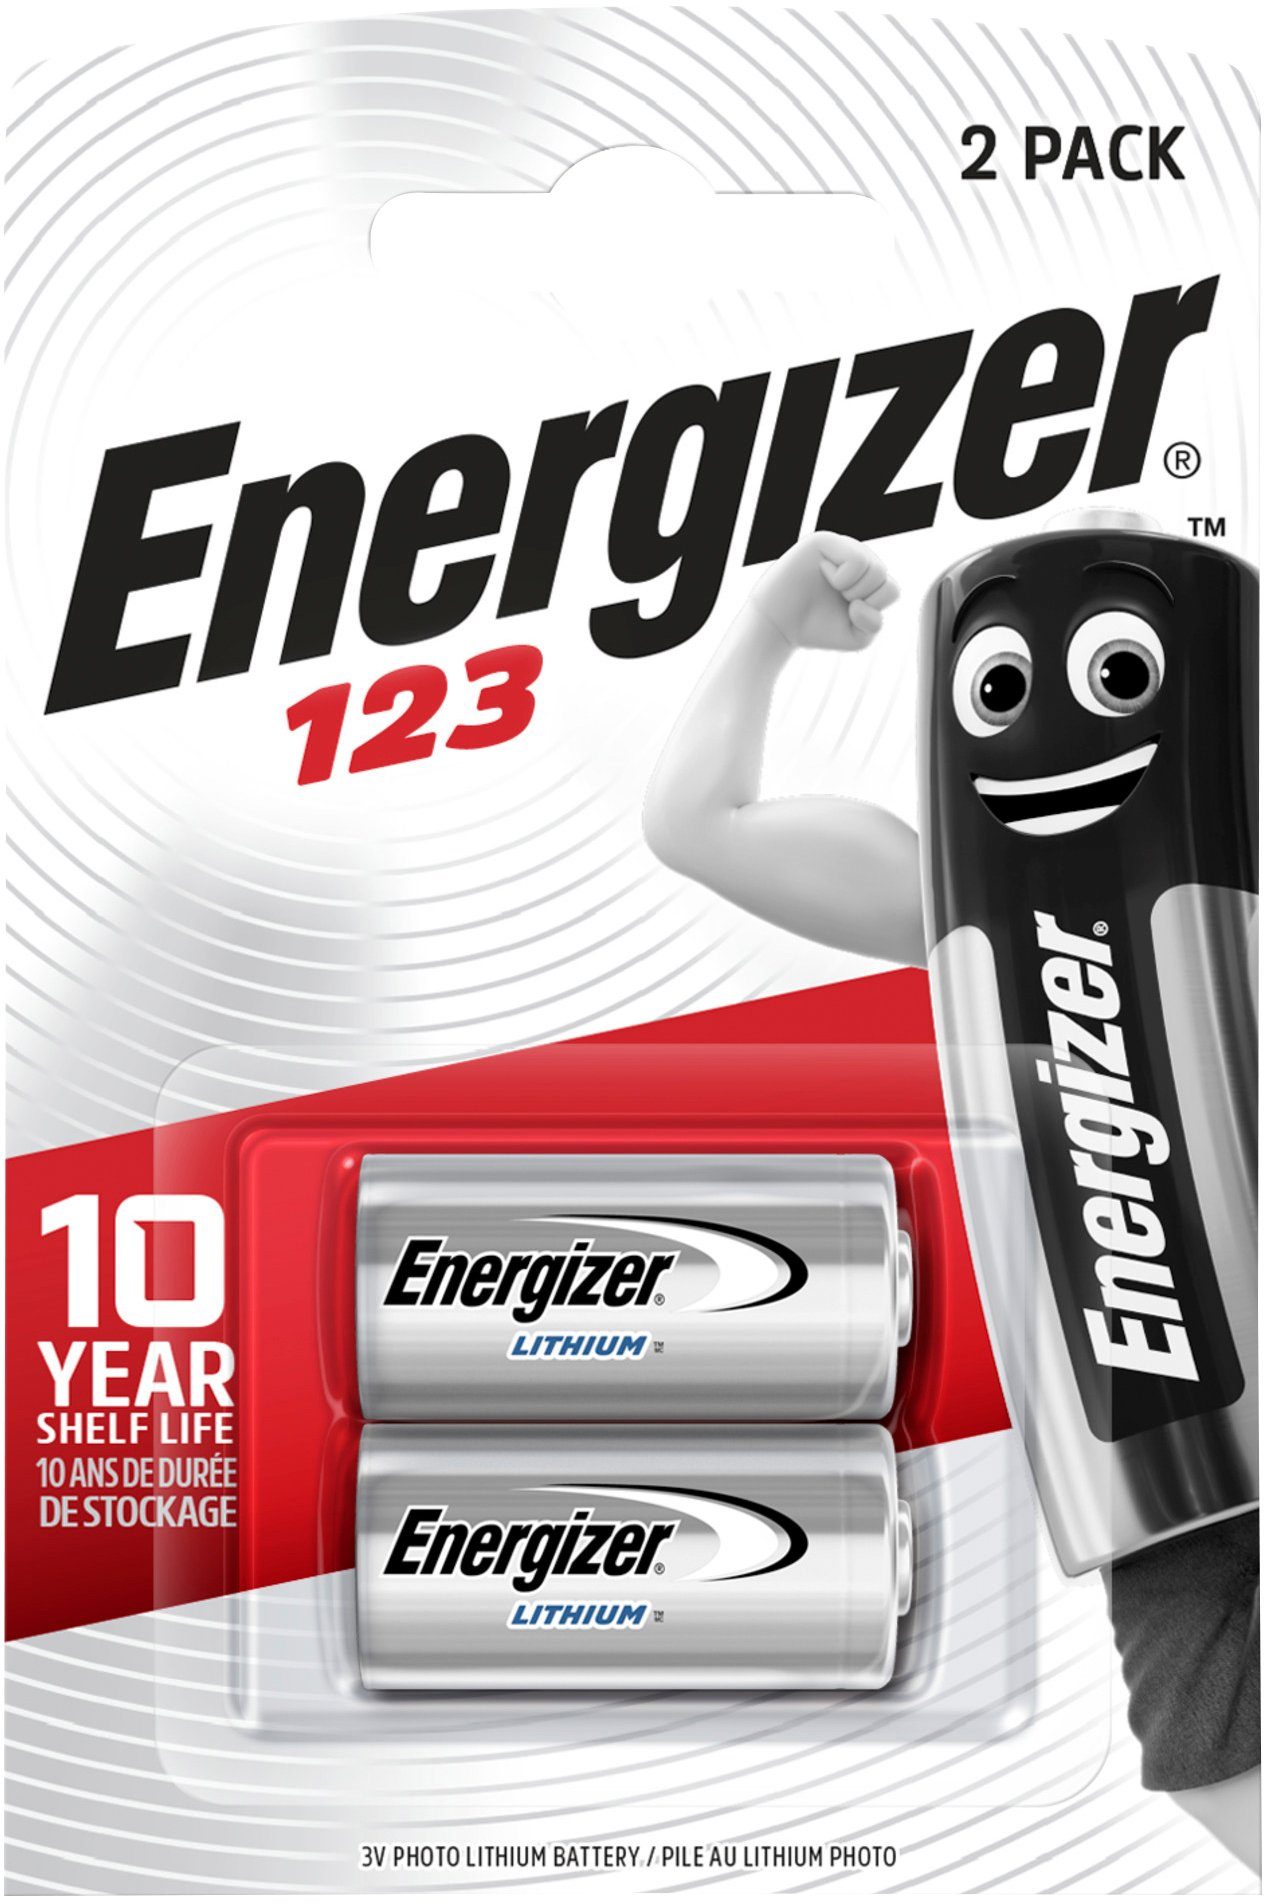 Energizer 2 Stk Lithium Photo 123 Batterie, (3 V, 2 St), für Hightech Geräte, bis zu 10 Jahren Haltbarkeit bei Lagerung